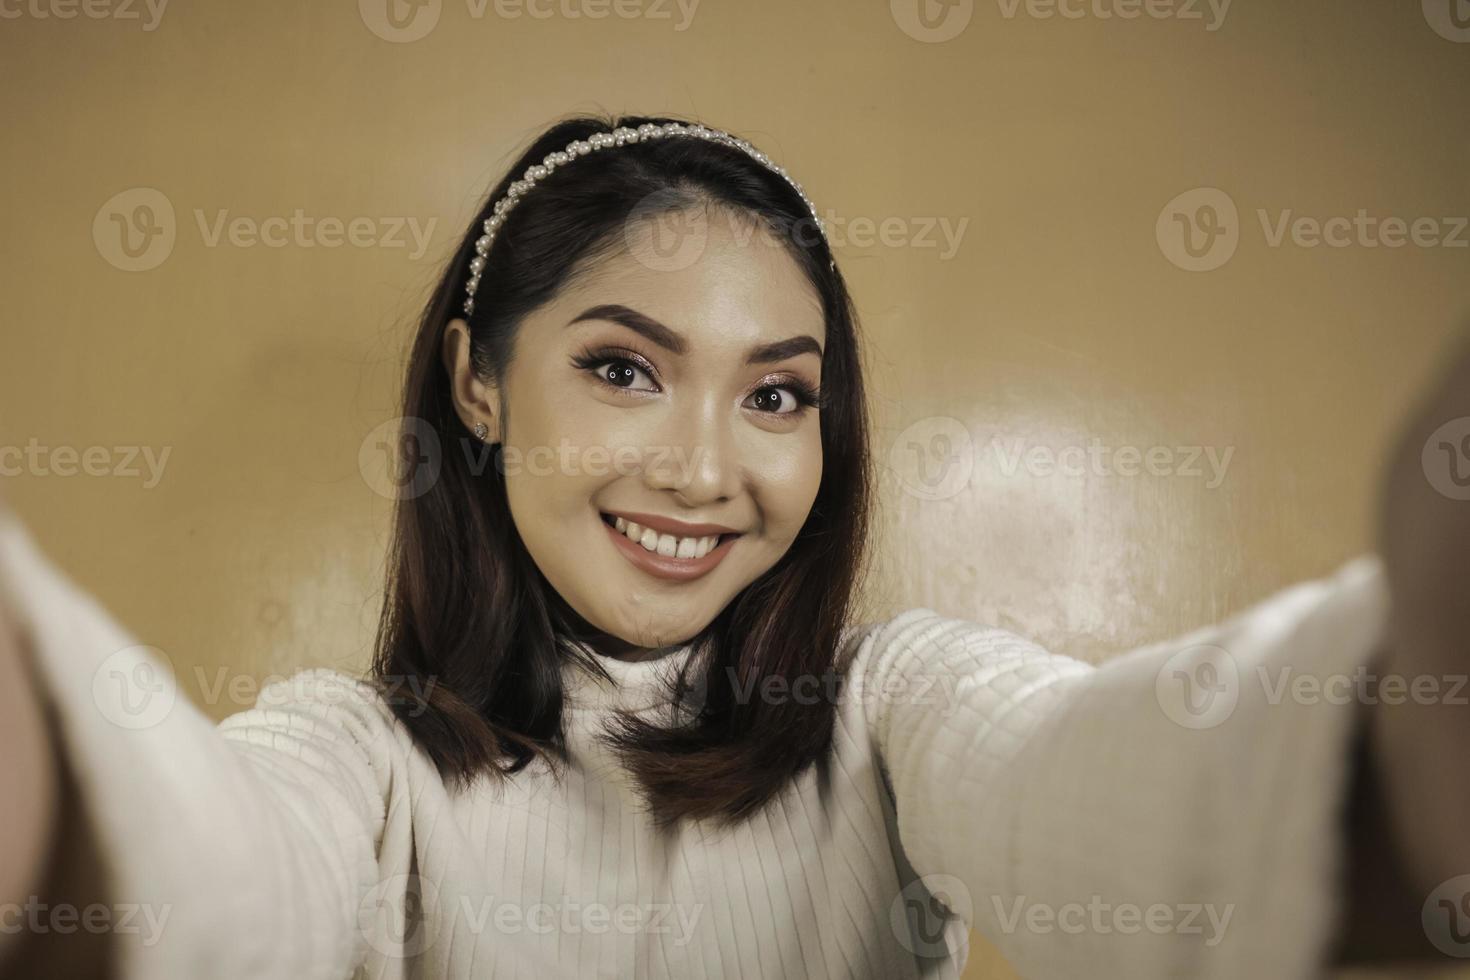 jeune femme asiatique sourit et selfie prend des photos avec son téléphone portable. femme indonésienne sur fond orange.